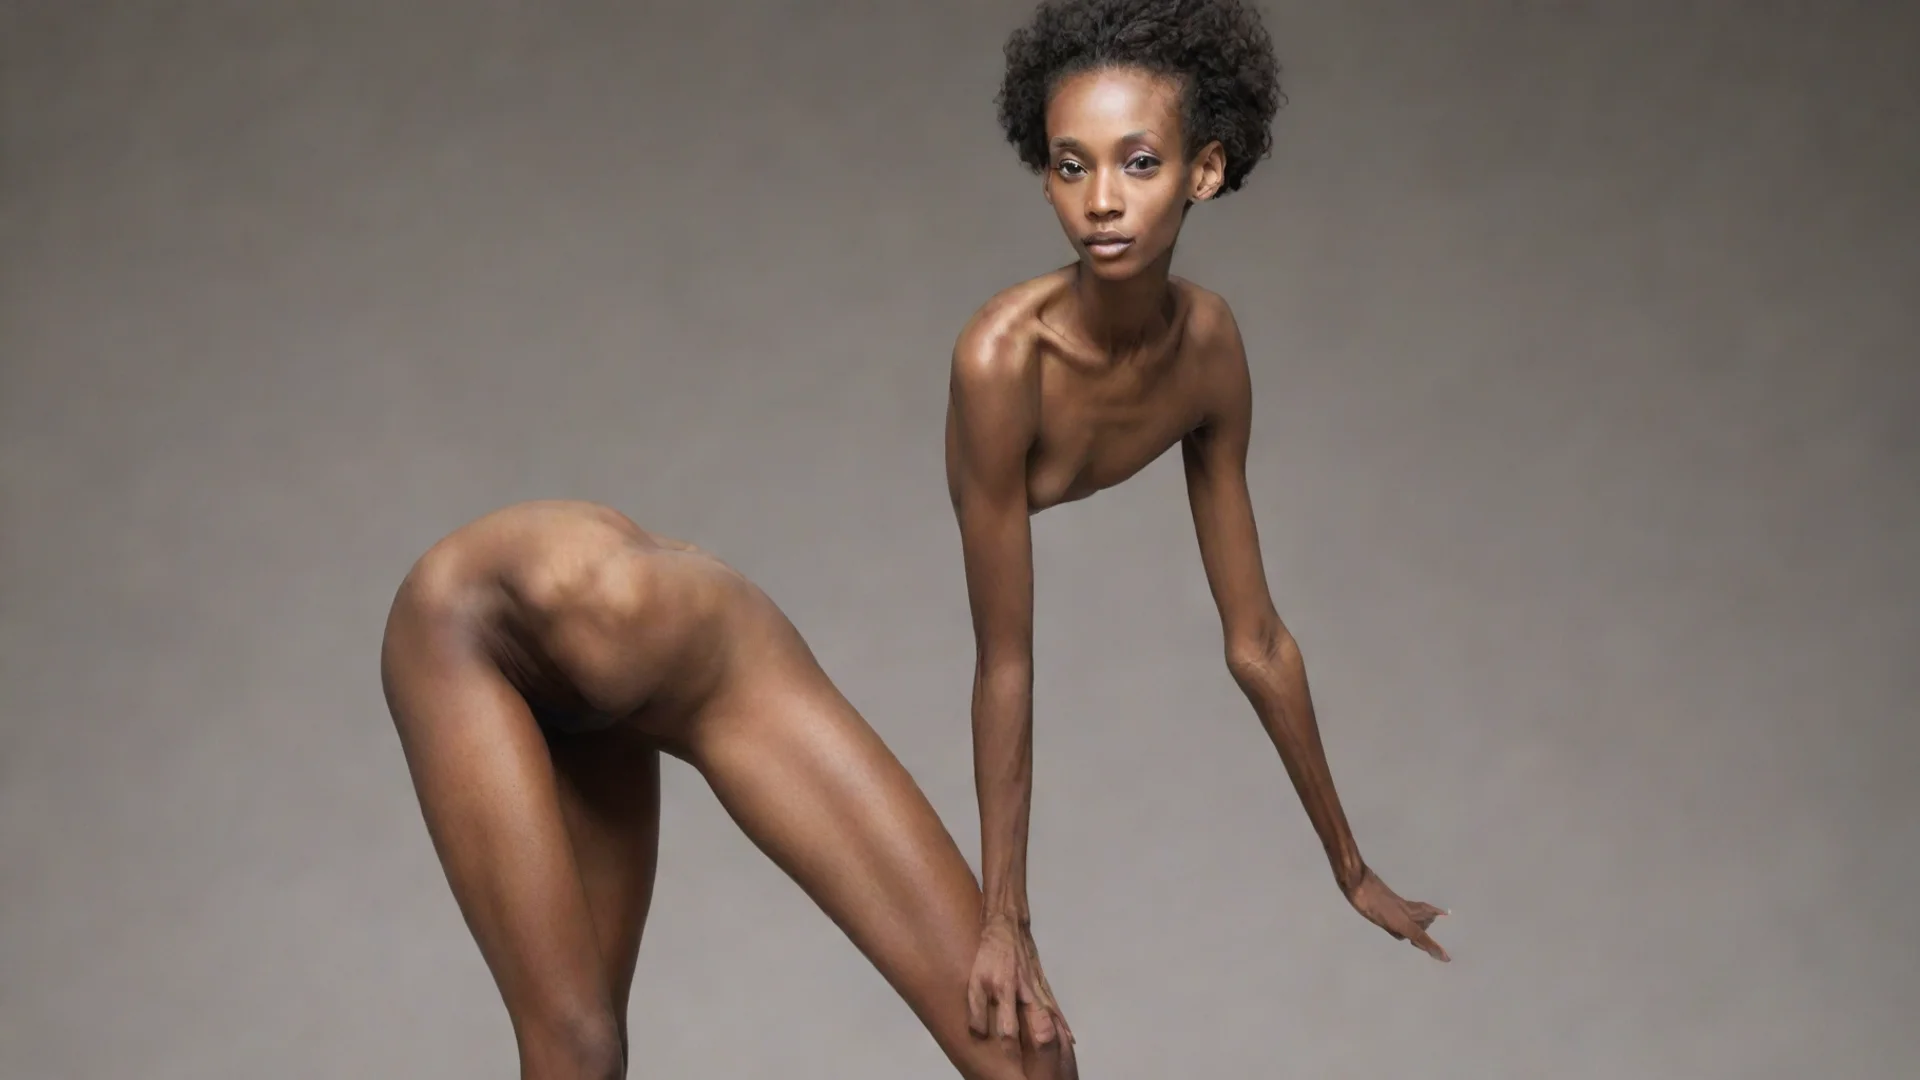 aivery very very very very very skinny black woman hdwidescreen